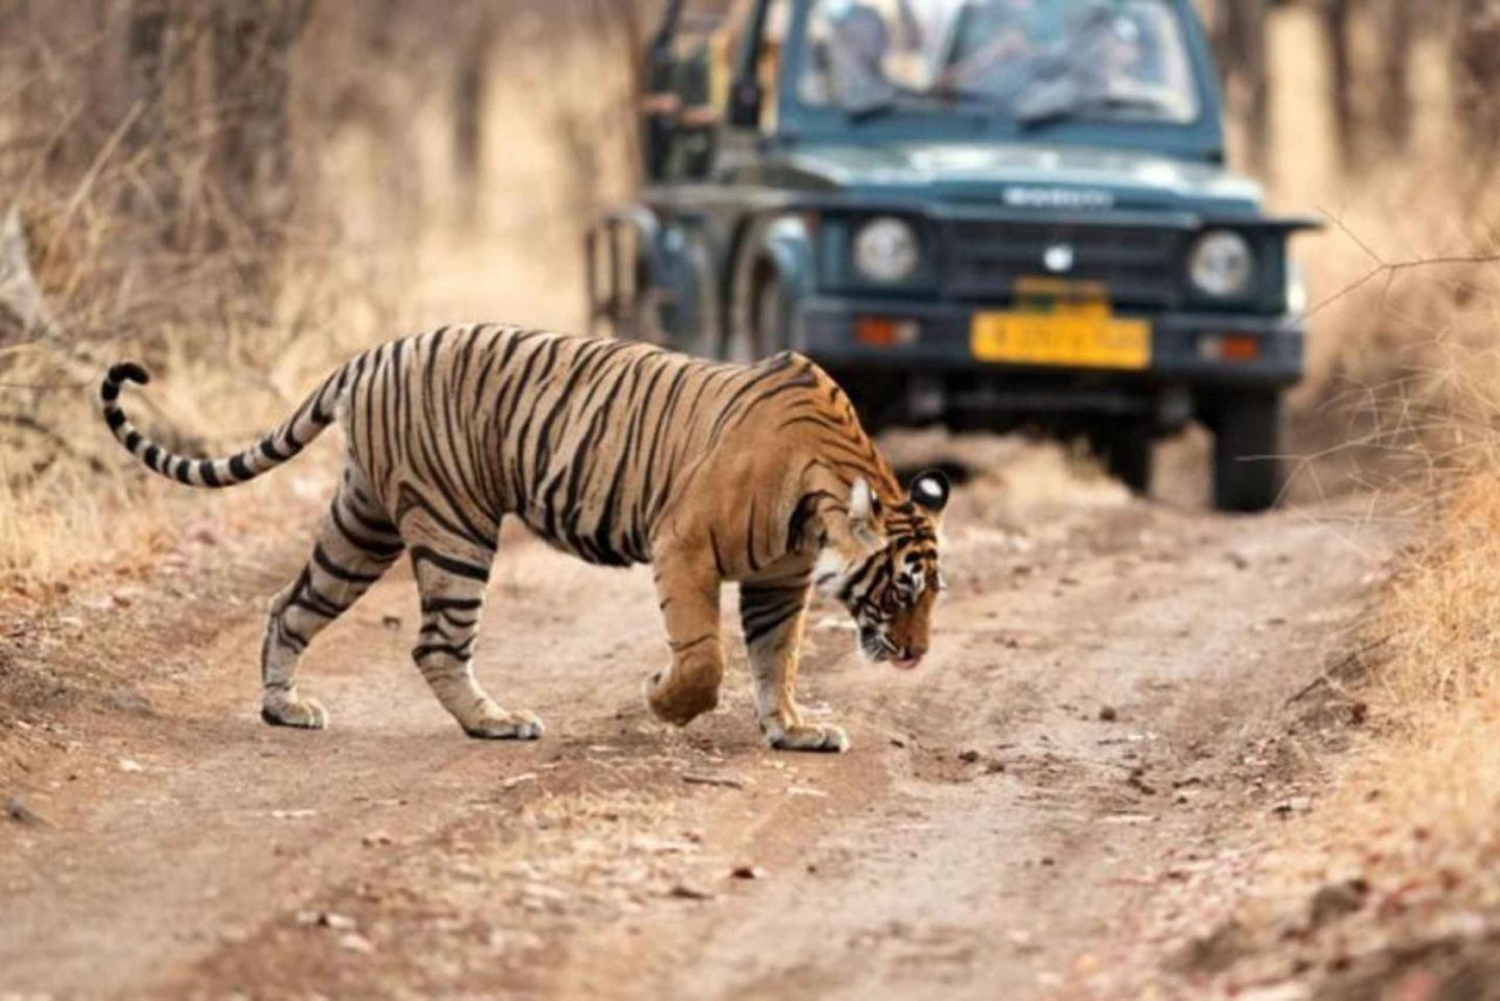 Jaipurista: Yksityinen Ranthambore päiväretki tiikerisafarin kanssa